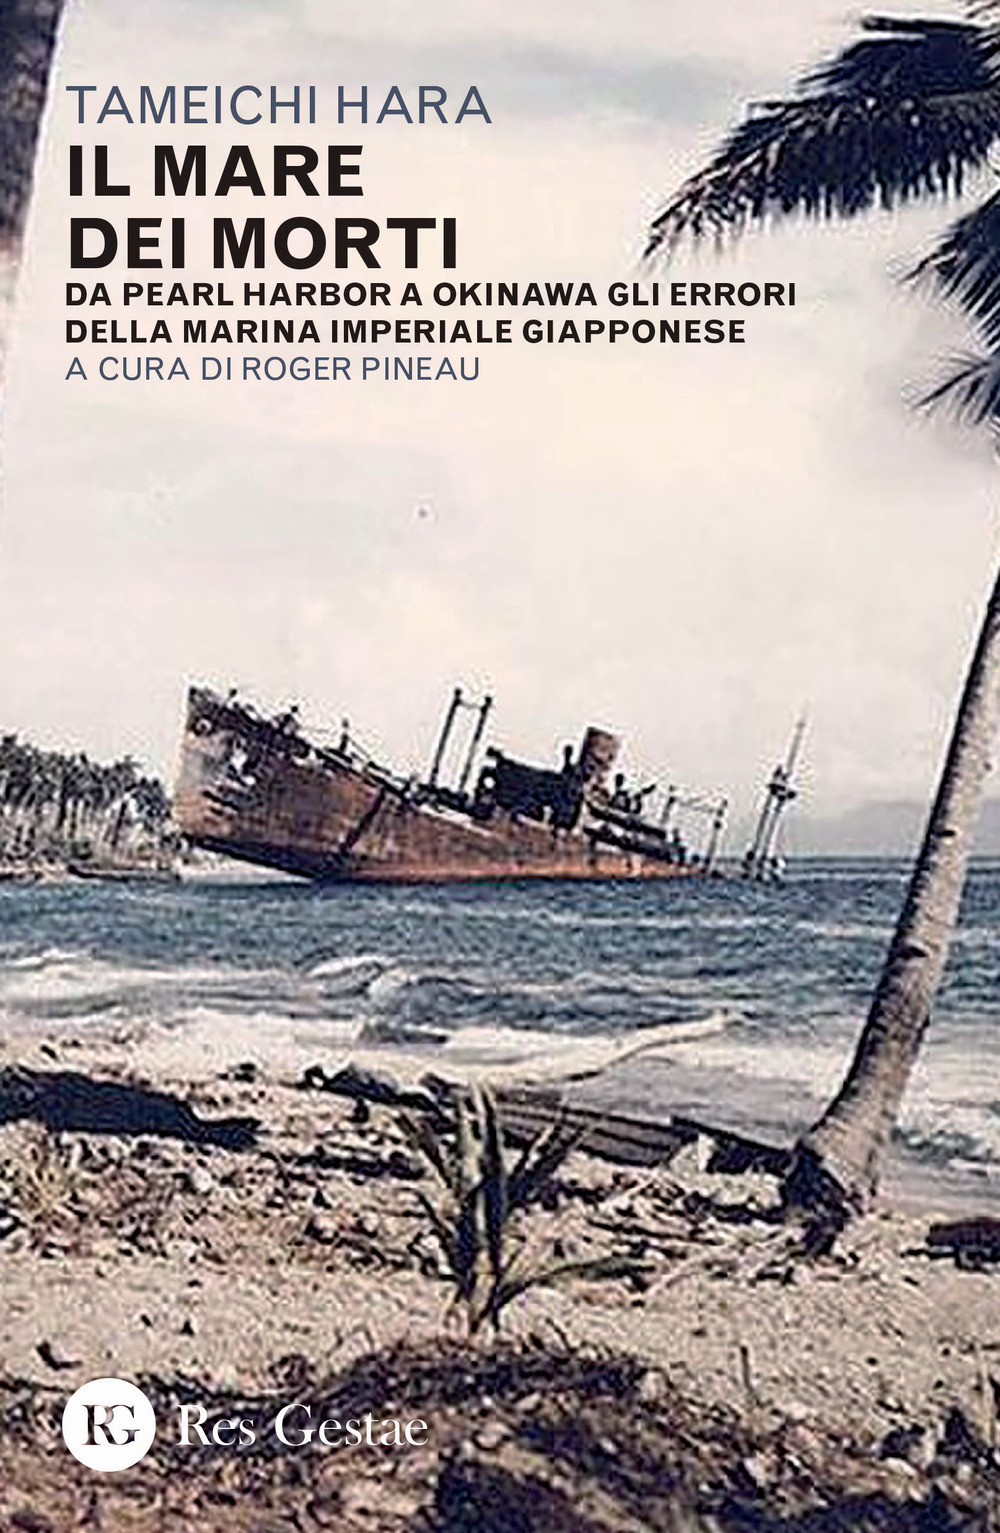 Il mare dei morti. Da Pearl Harbor a Okinawa gli errori della marina imperiale giapponese